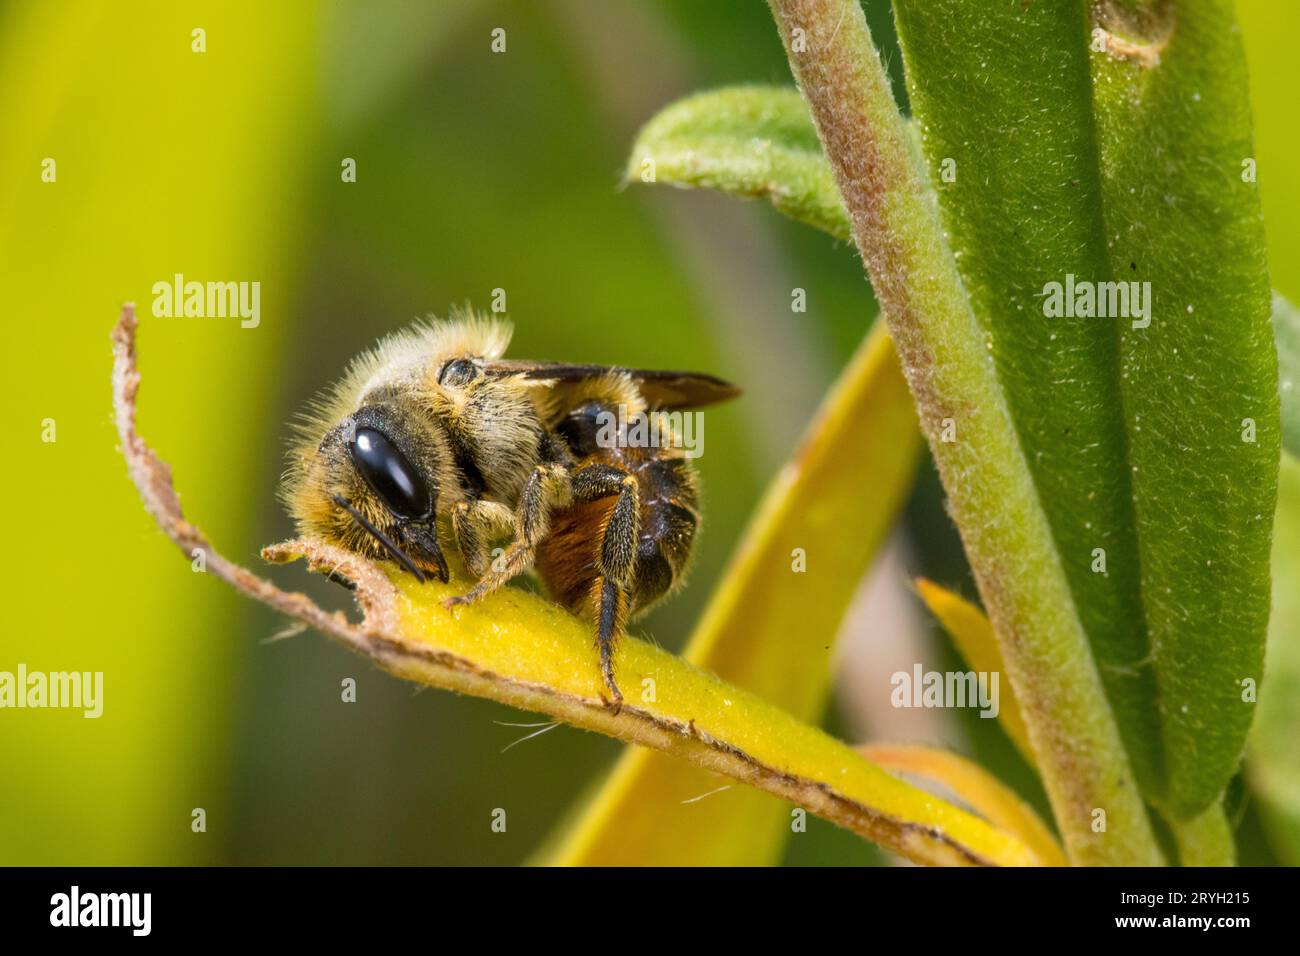 Nido di api immagini e fotografie stock ad alta risoluzione - Alamy